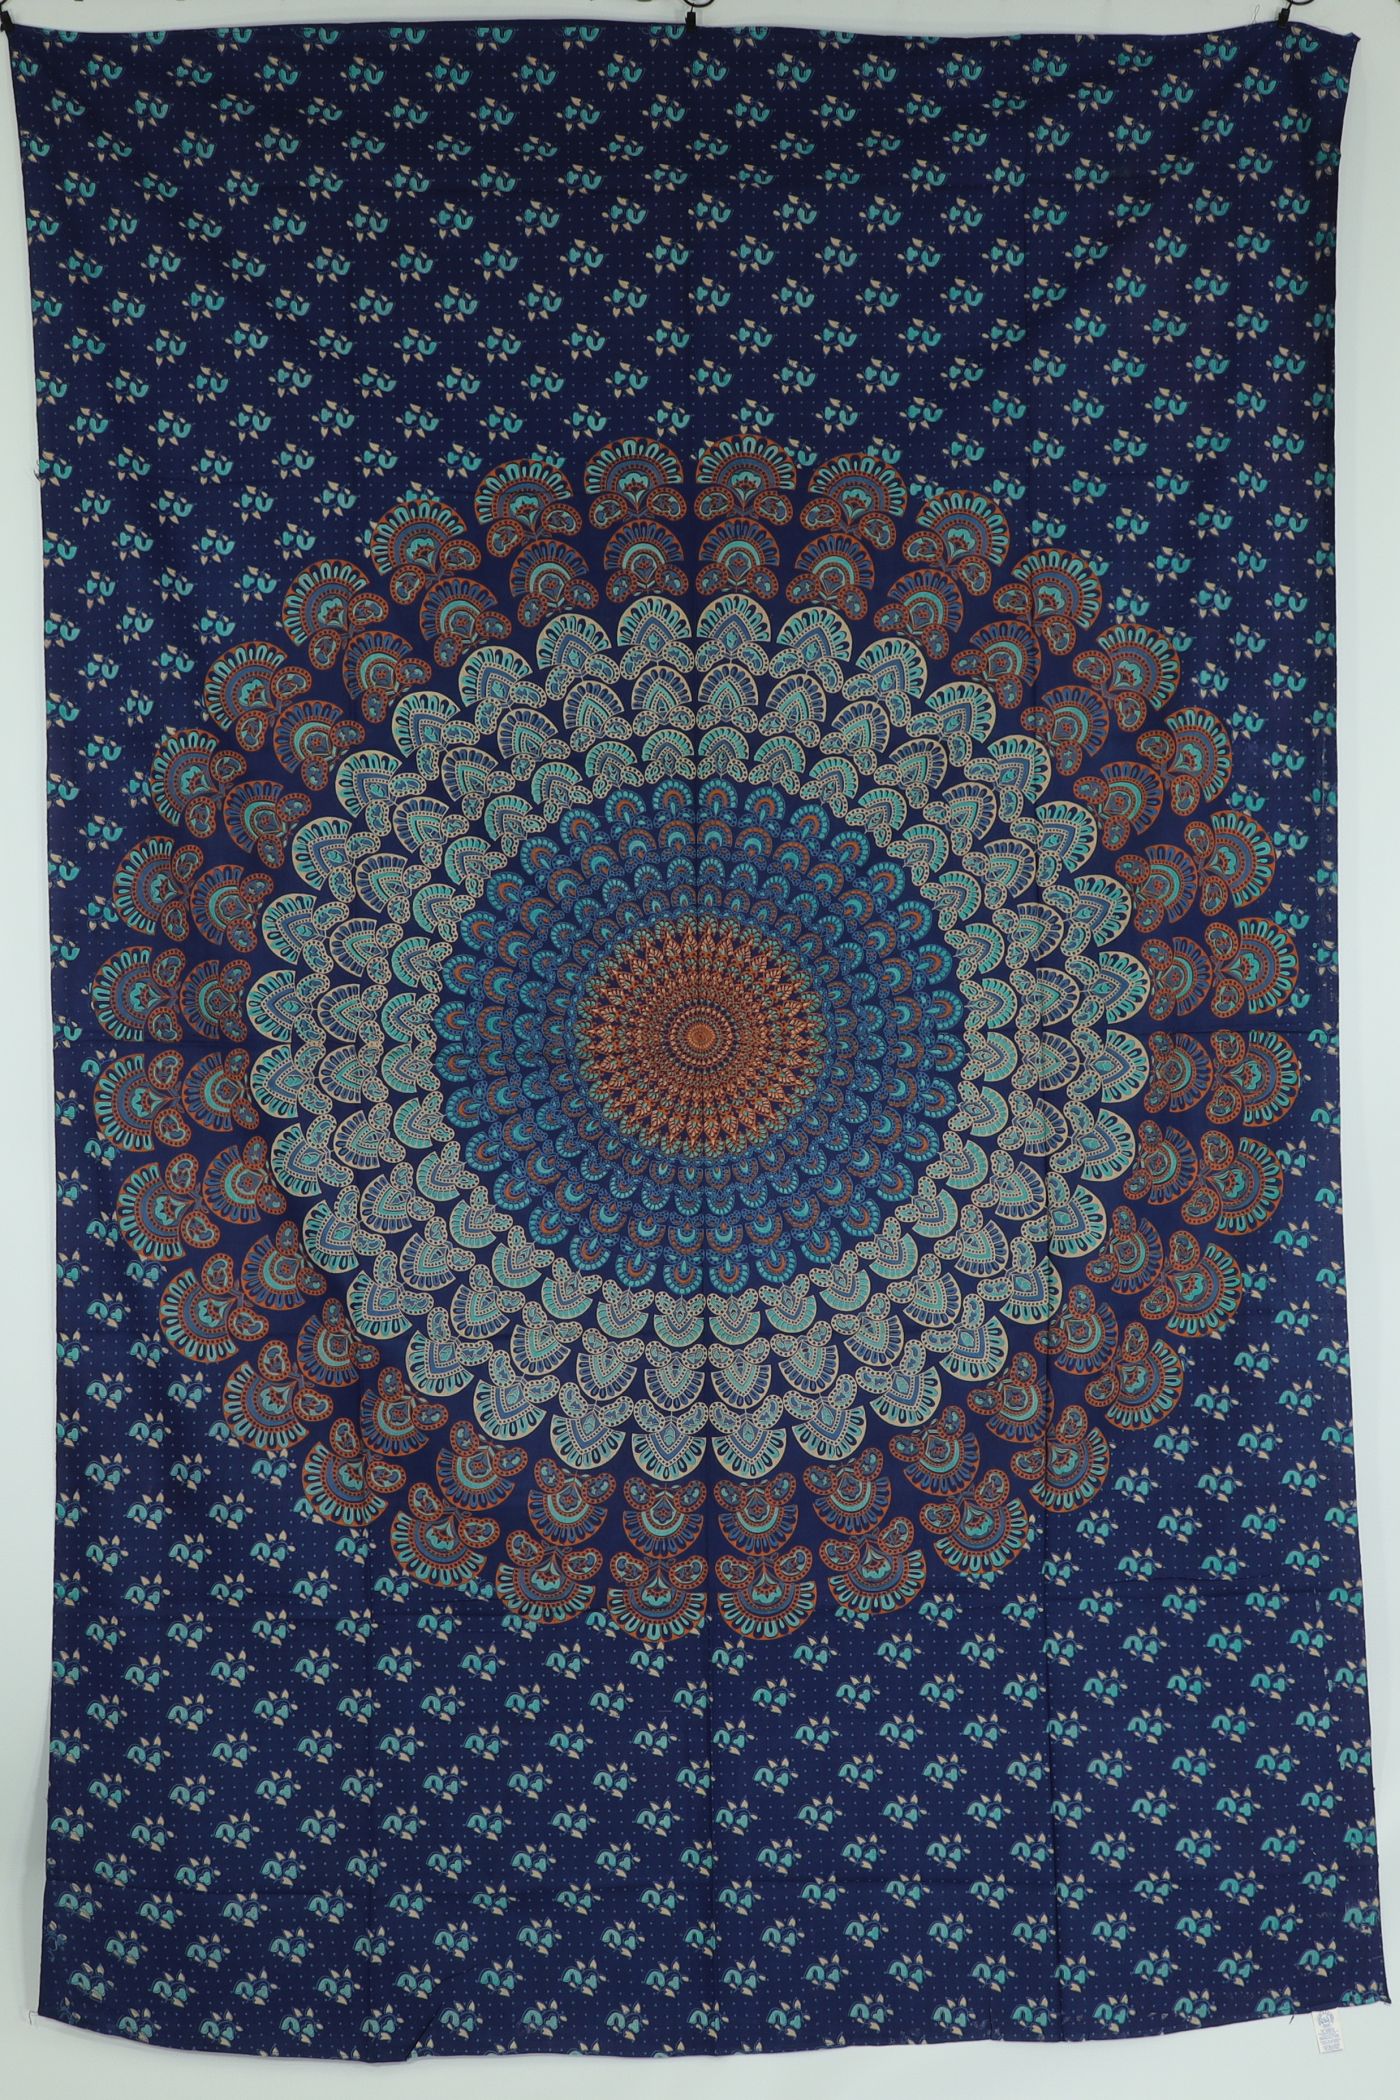 Wandtuch XL 130x210 - Mandala - 100% Baumwolle - detailreicher indischer Druck - dekoratives Tuch, Wandbild, Tagesdecke, Bedcover, Vorhang, Picknick-Decke, Strandtuch